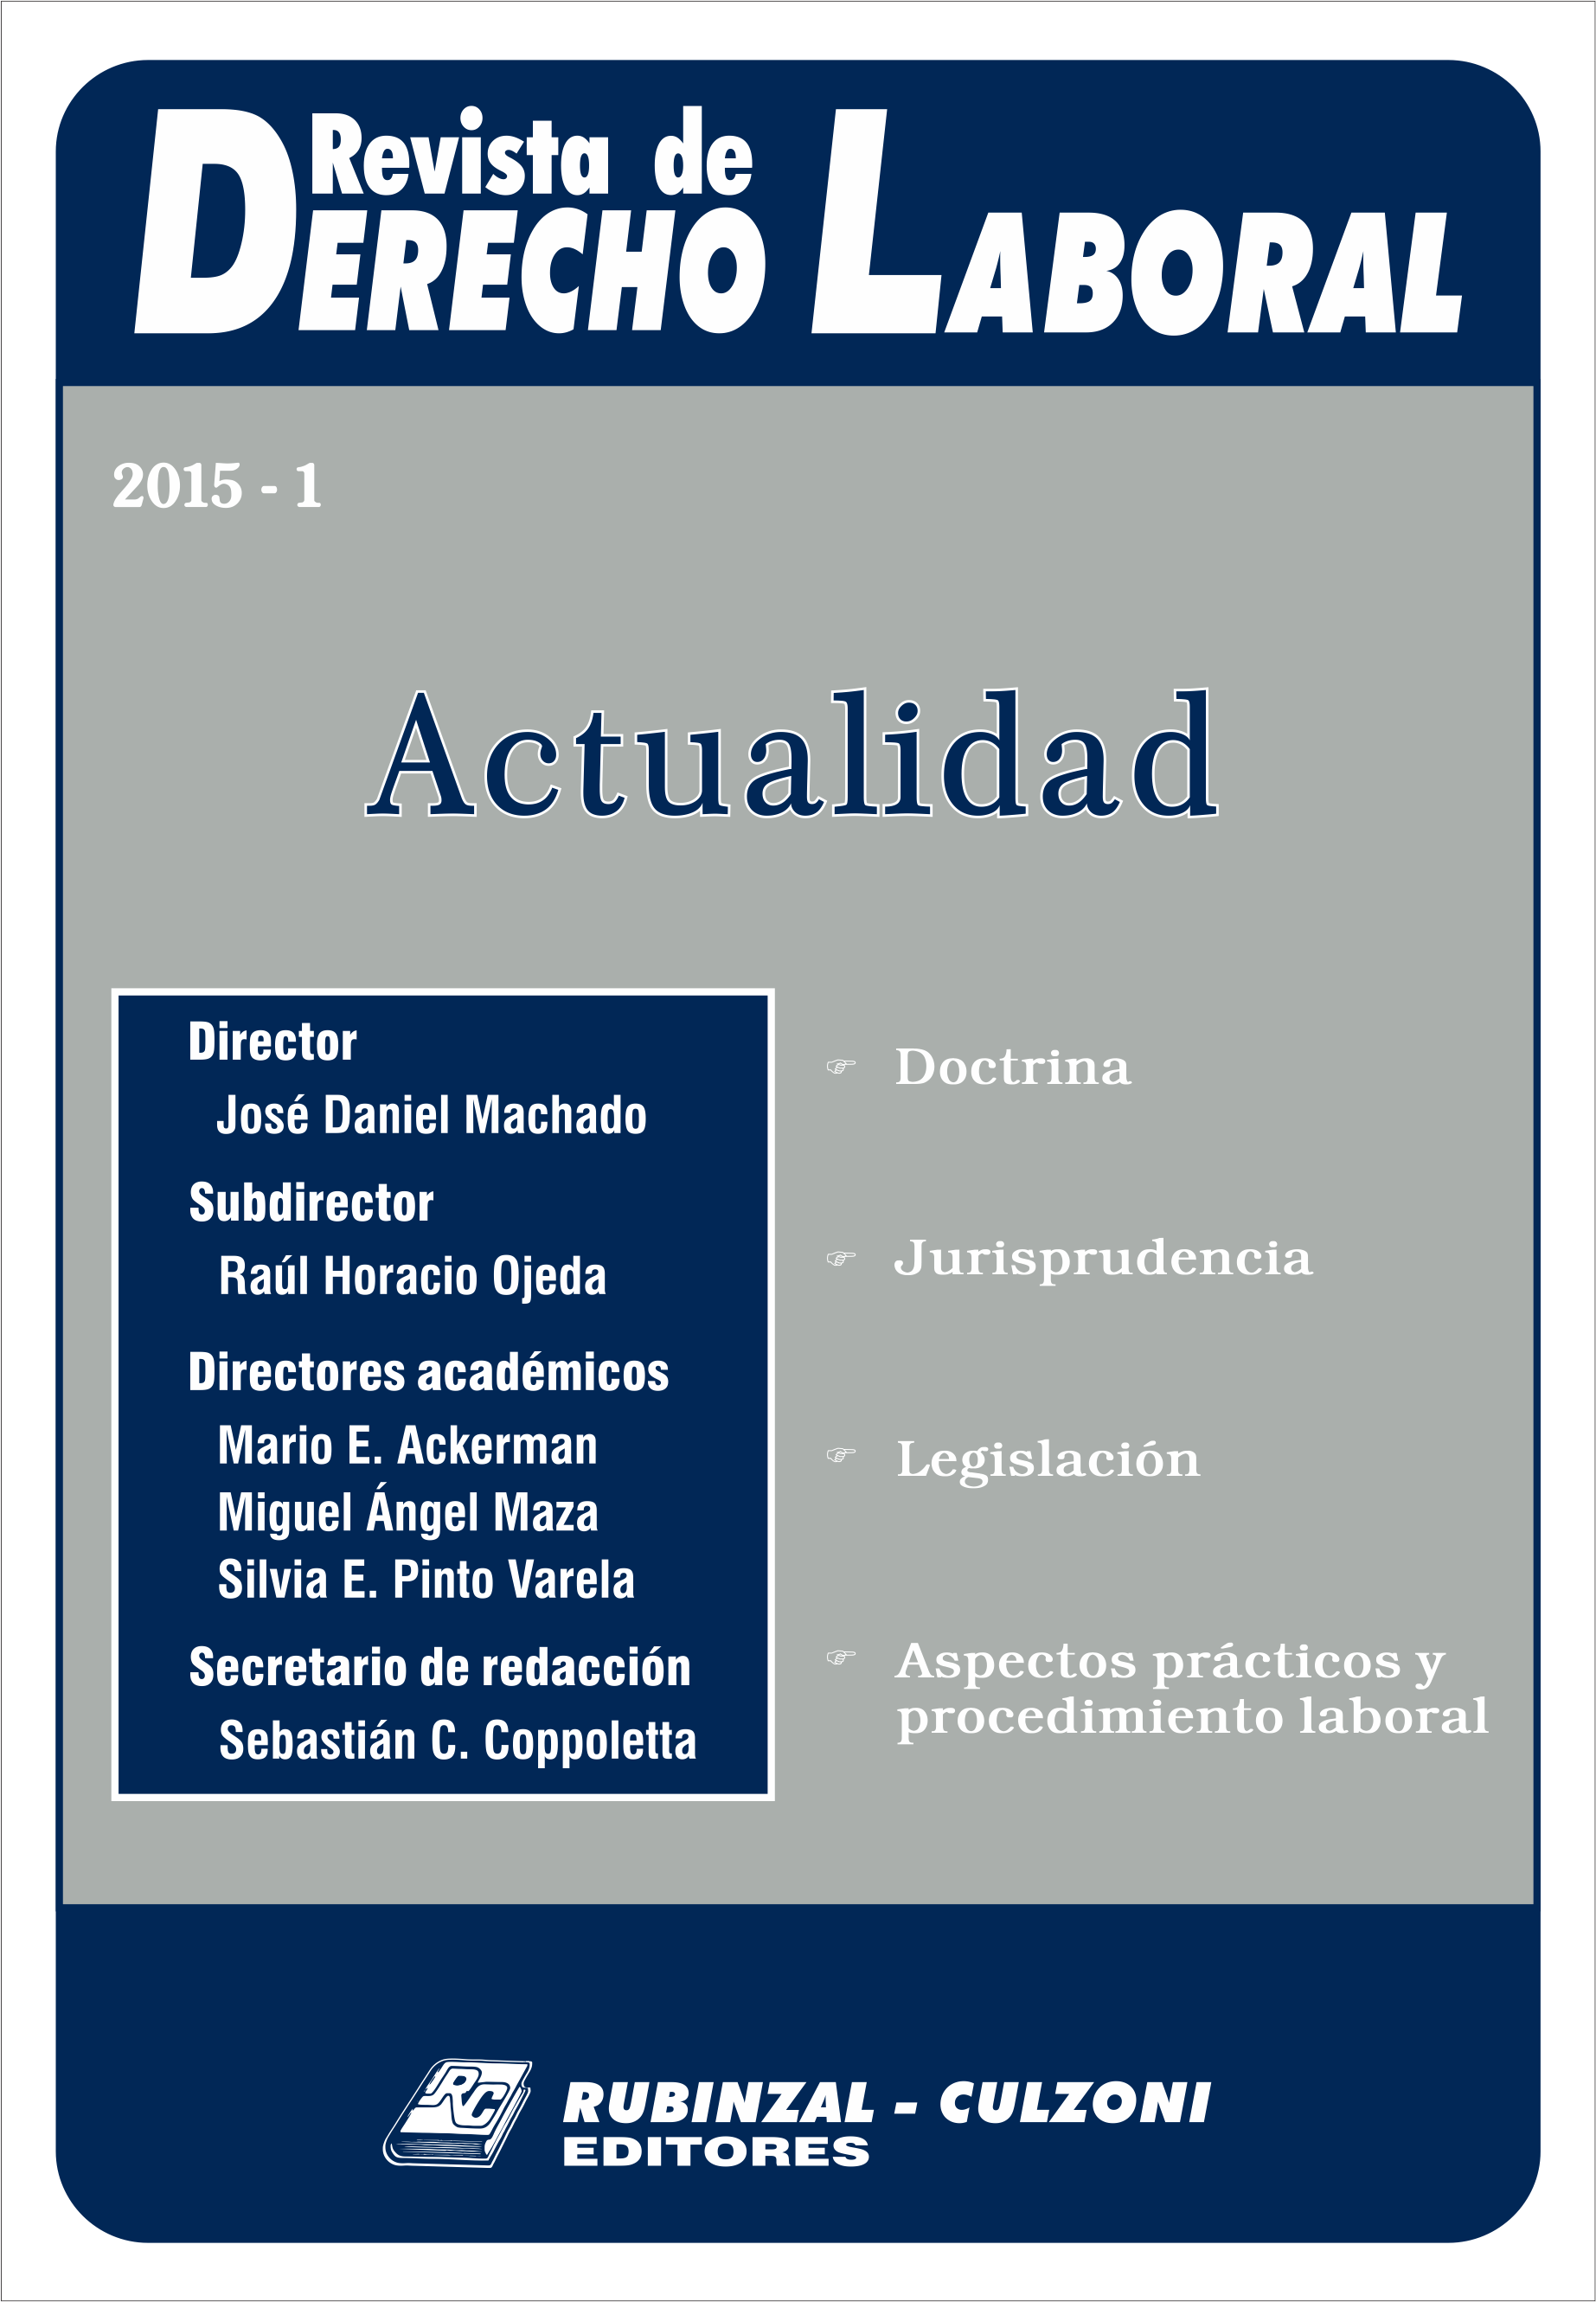 Revista de Derecho Laboral Actualidad - Año 2015 - 1